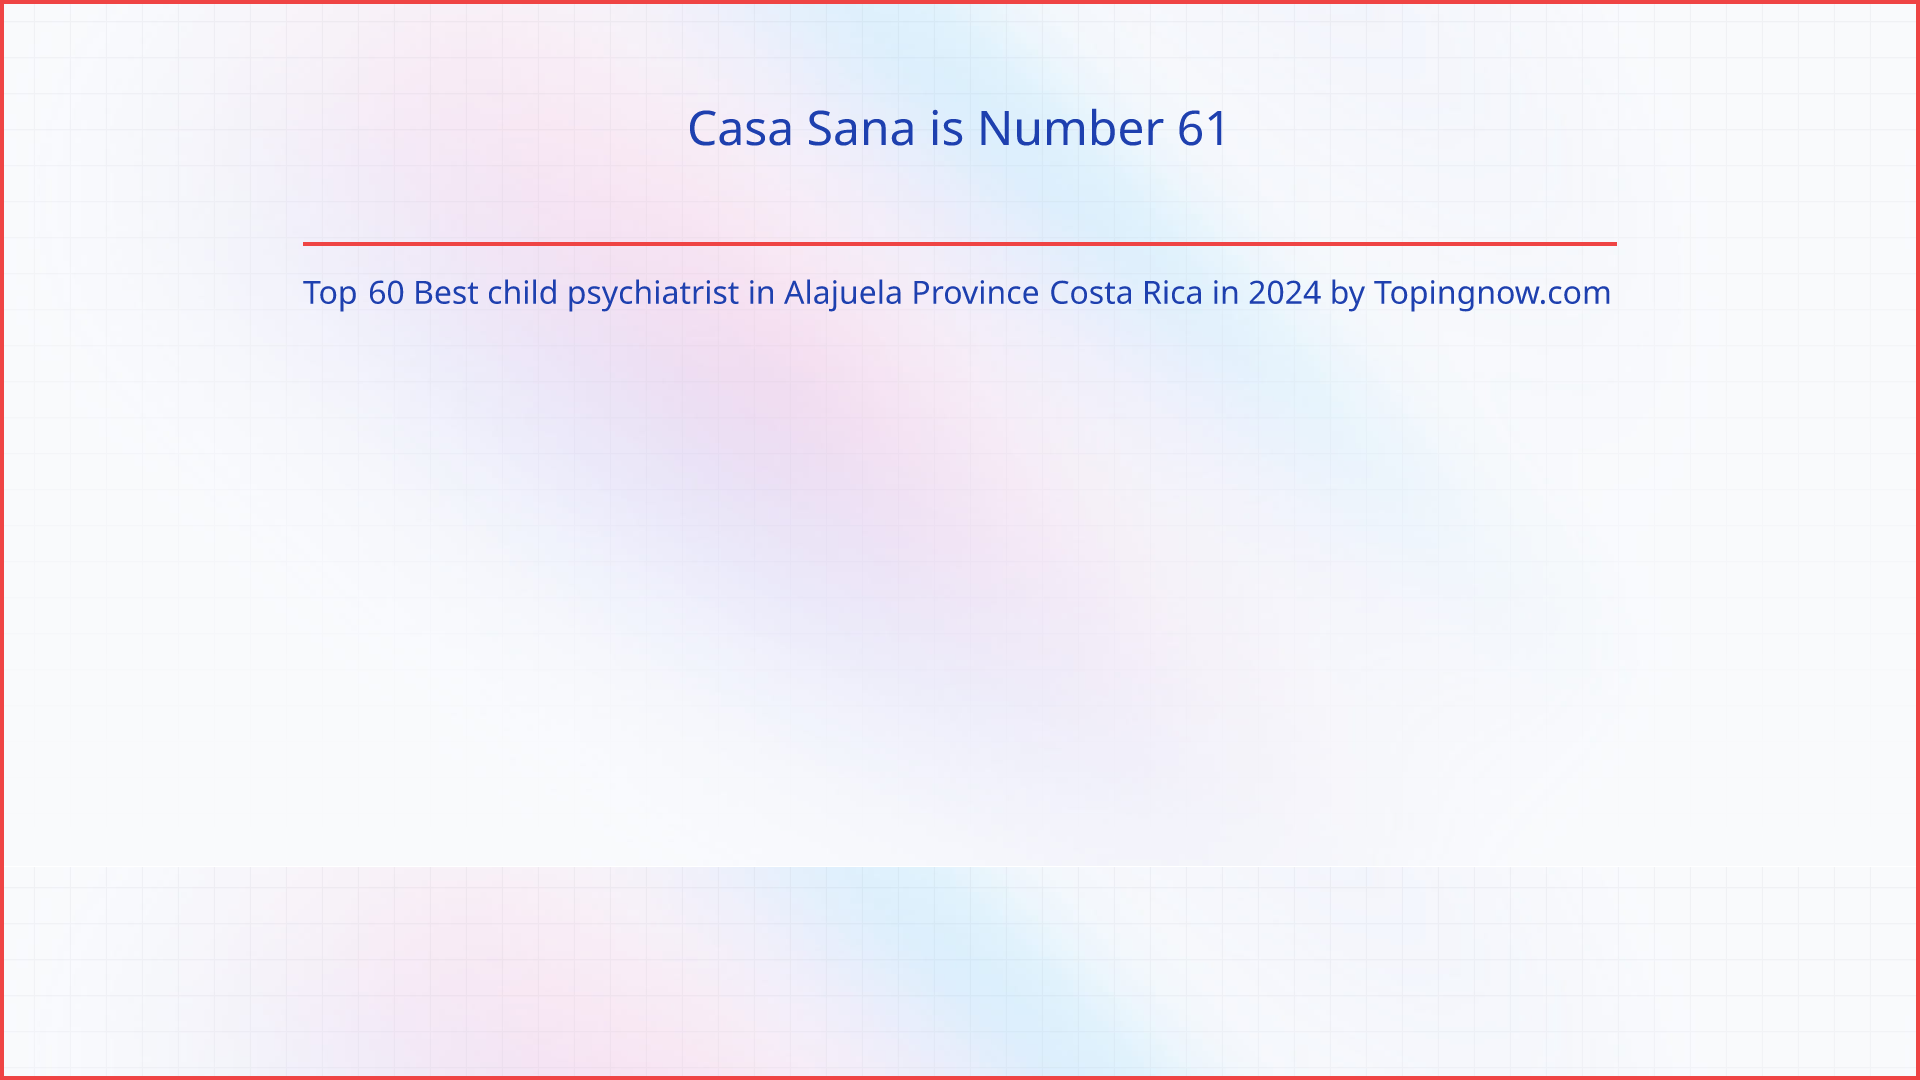 Casa Sana: Top 60 Best child psychiatrist in Alajuela Province Costa Rica in 2024